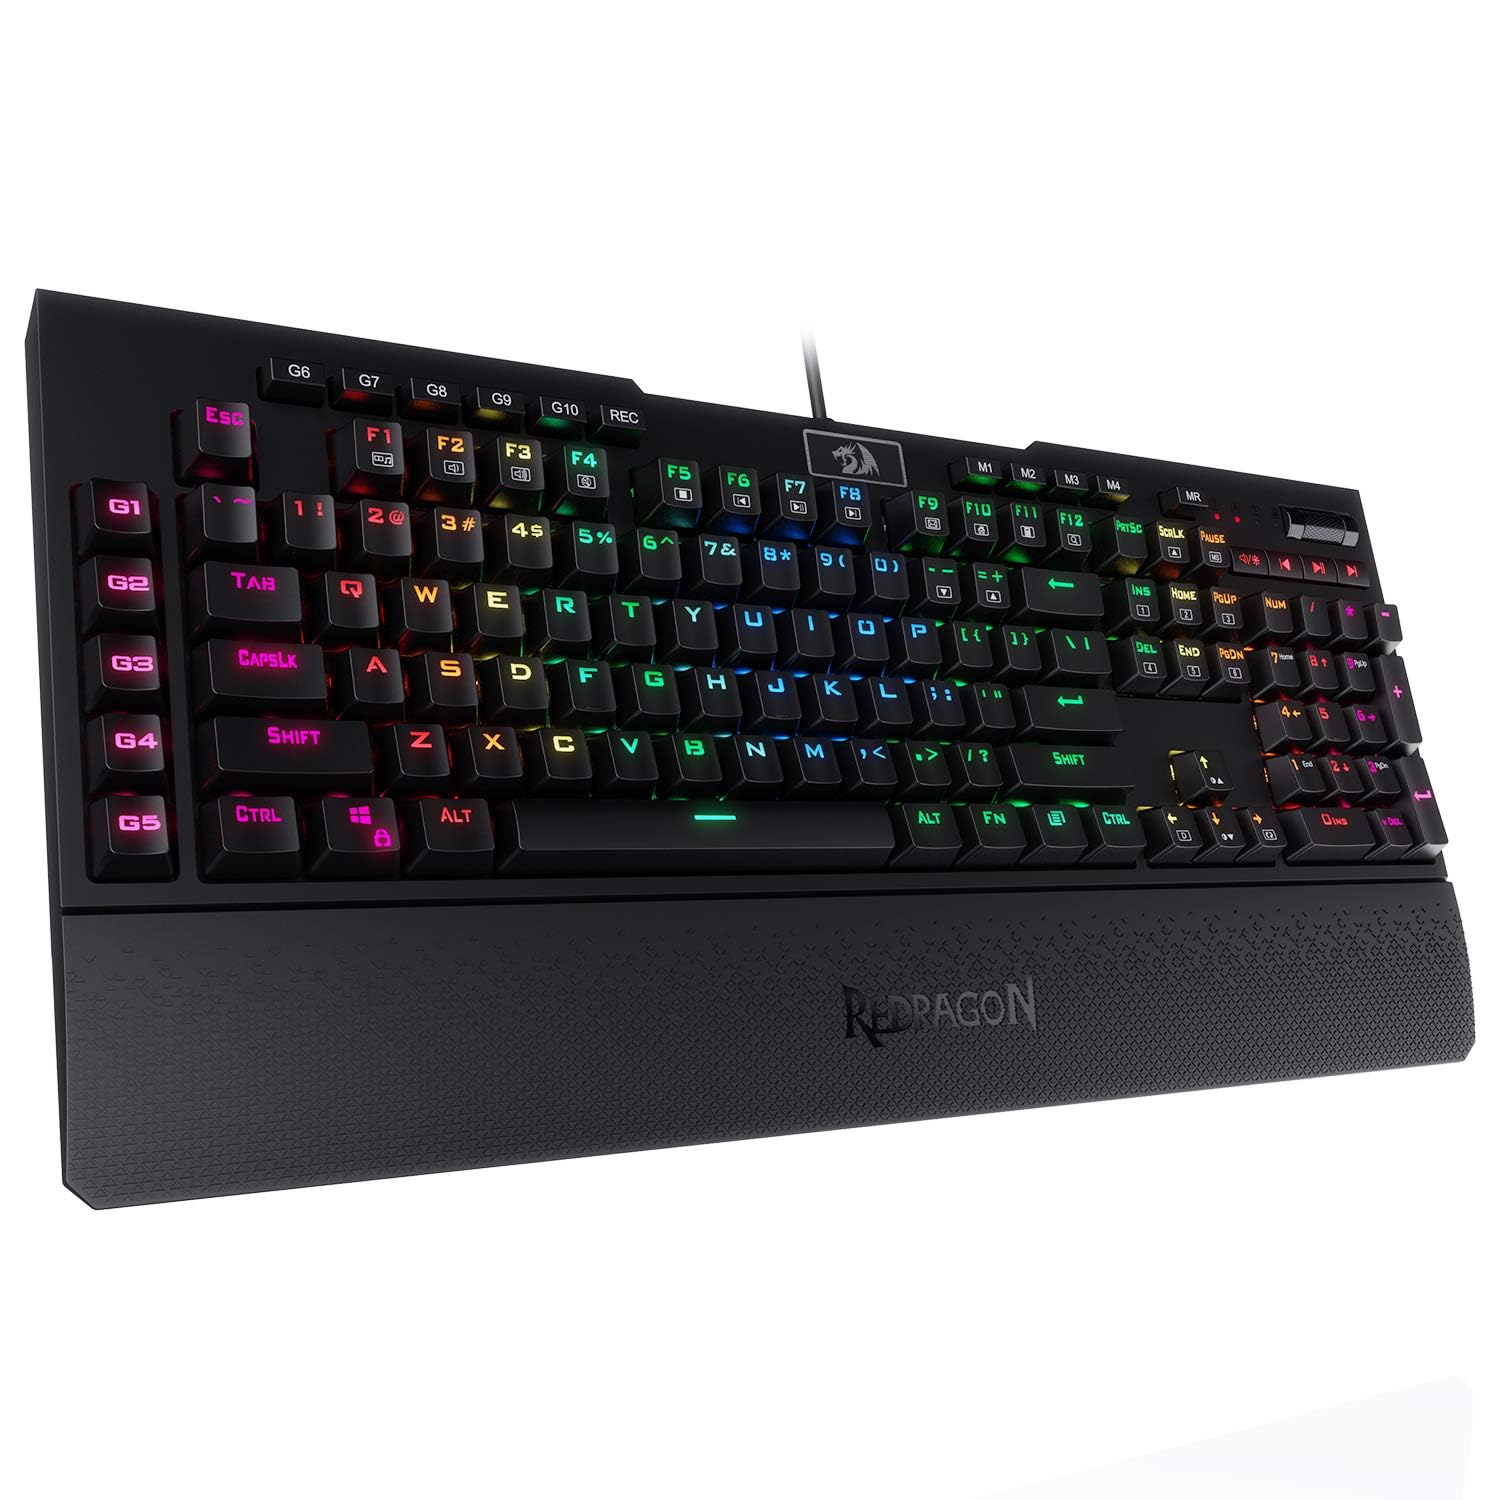 Redragon Mechanische Gaming-Tastatur K586 RGB, 10 dedizierte Makrotasten, praktische Mediensteuerung und abnehmbare Handballenauflage, brauner Schalter